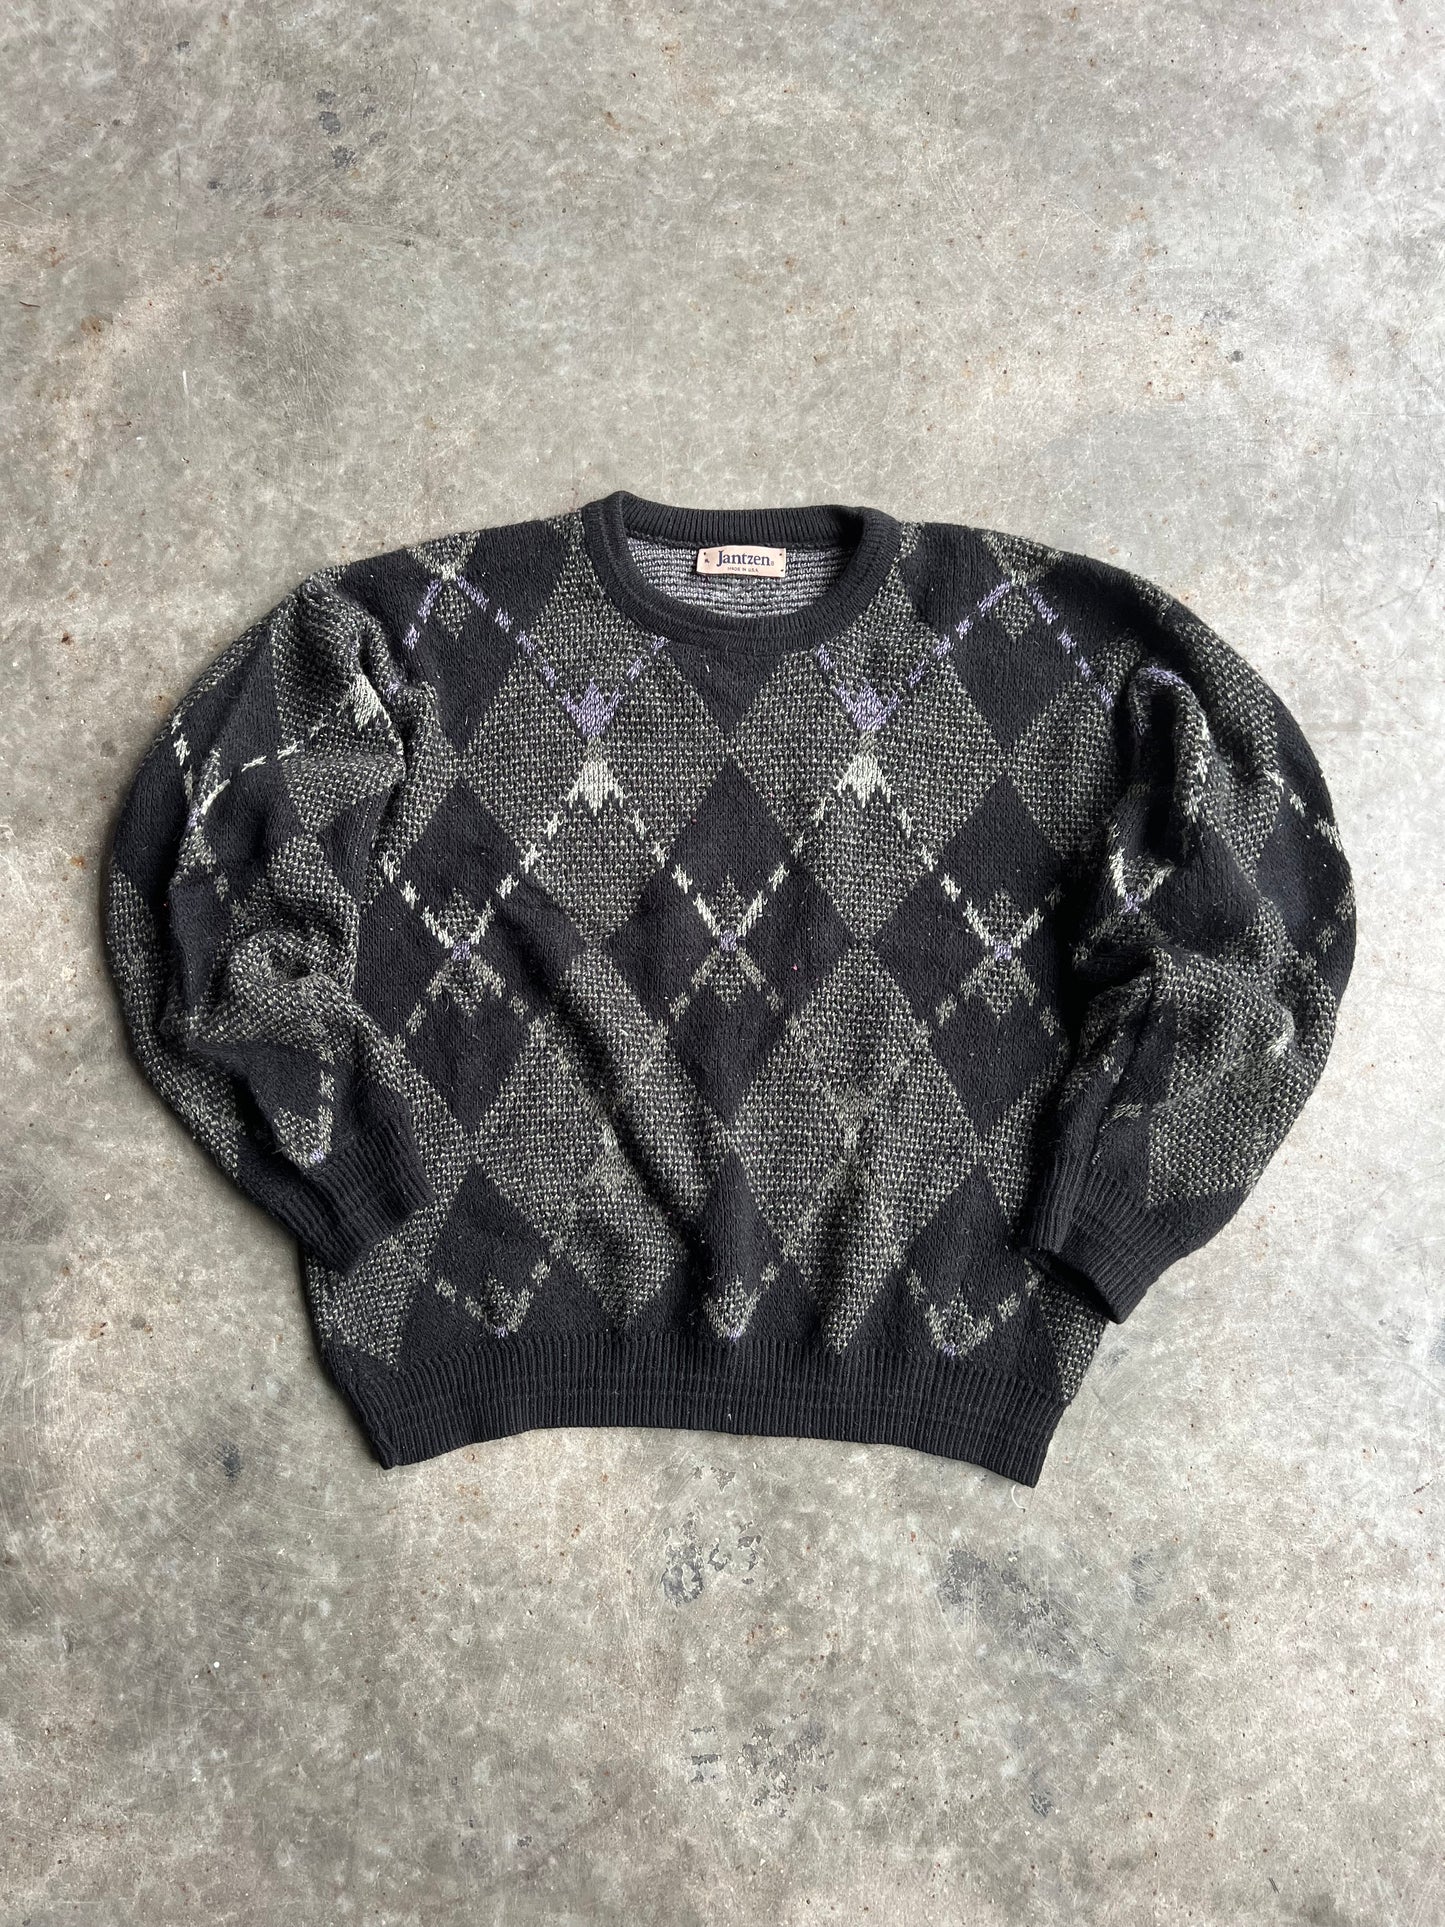 Vintage Jantzen Chunky Patterned Sweater - XL